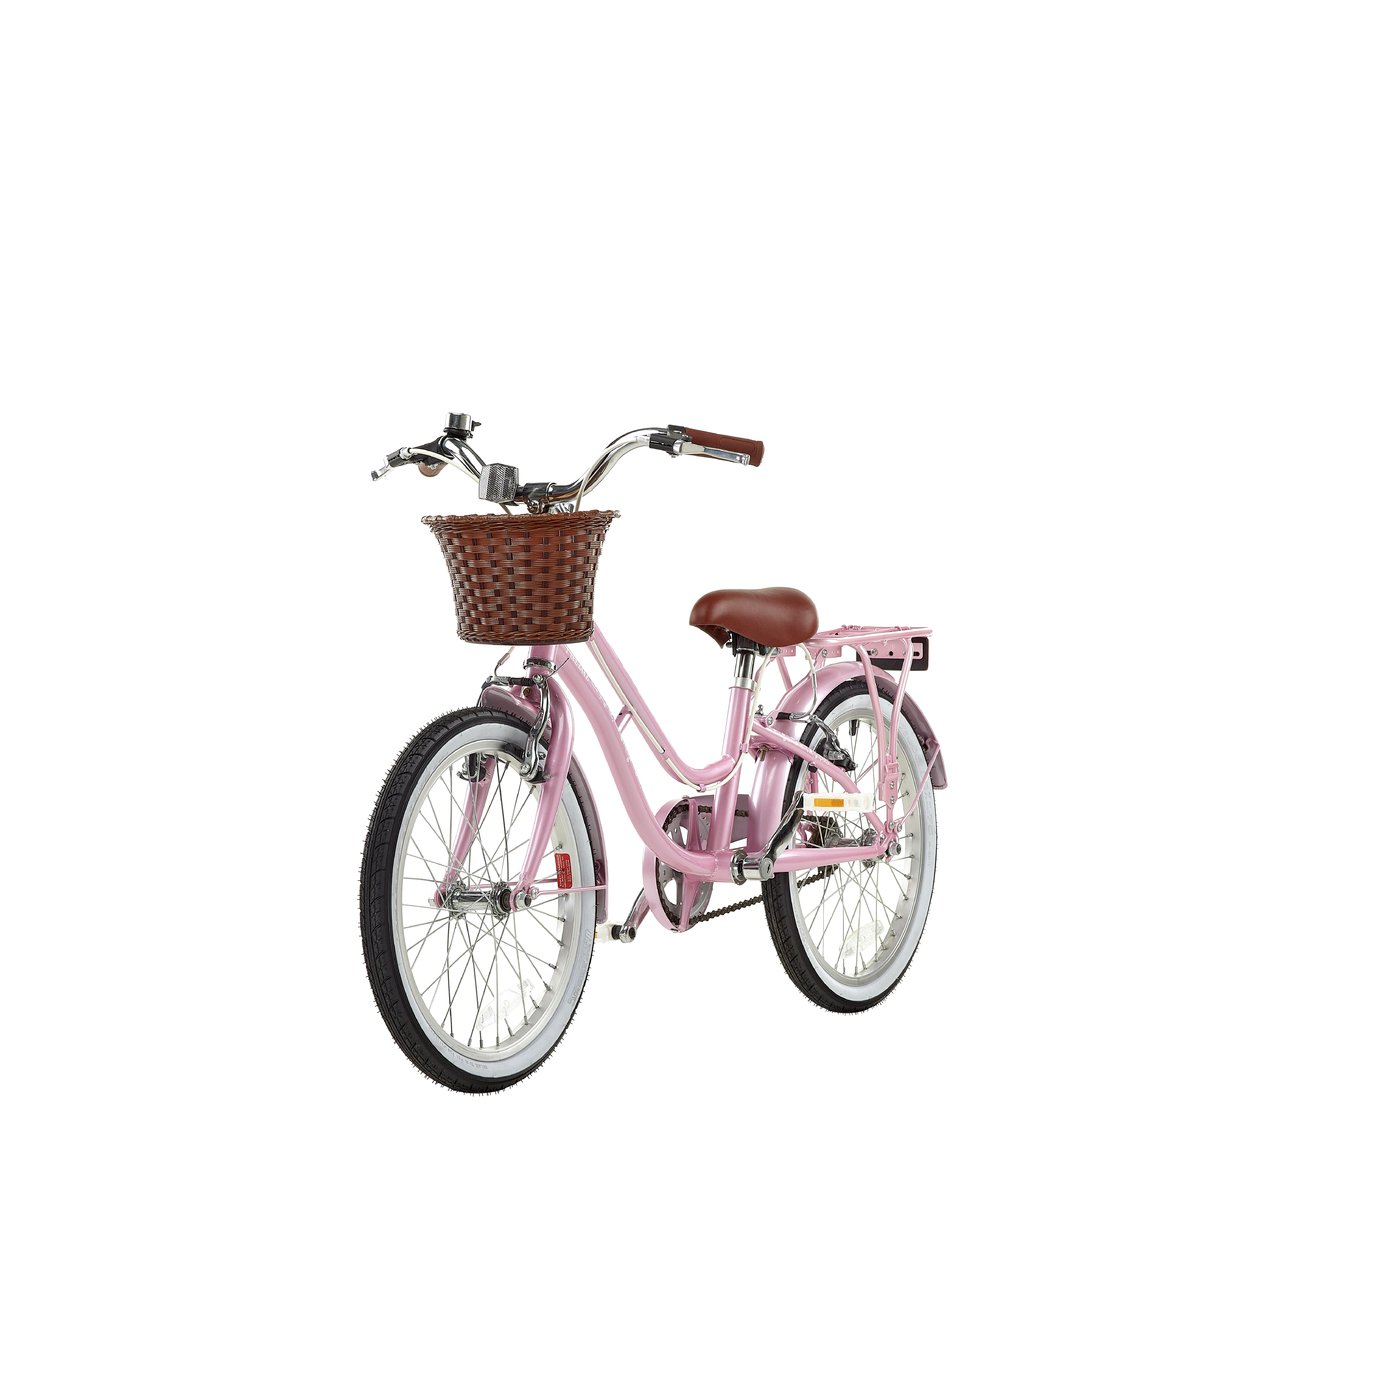 argos bicycle basket